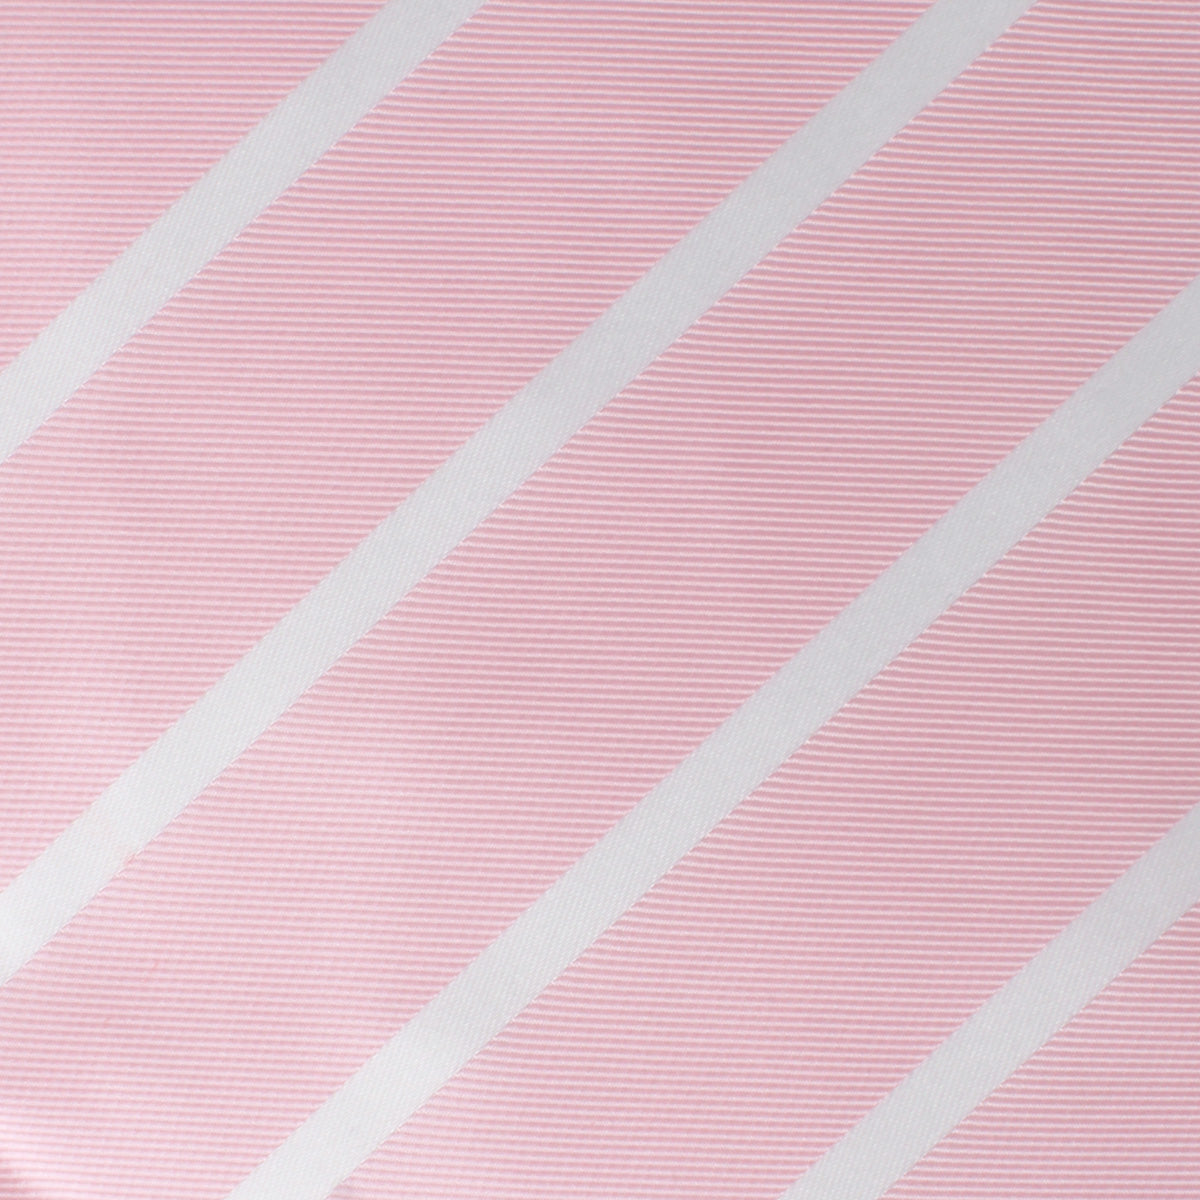 Rose Pink Striped Necktie Fabric